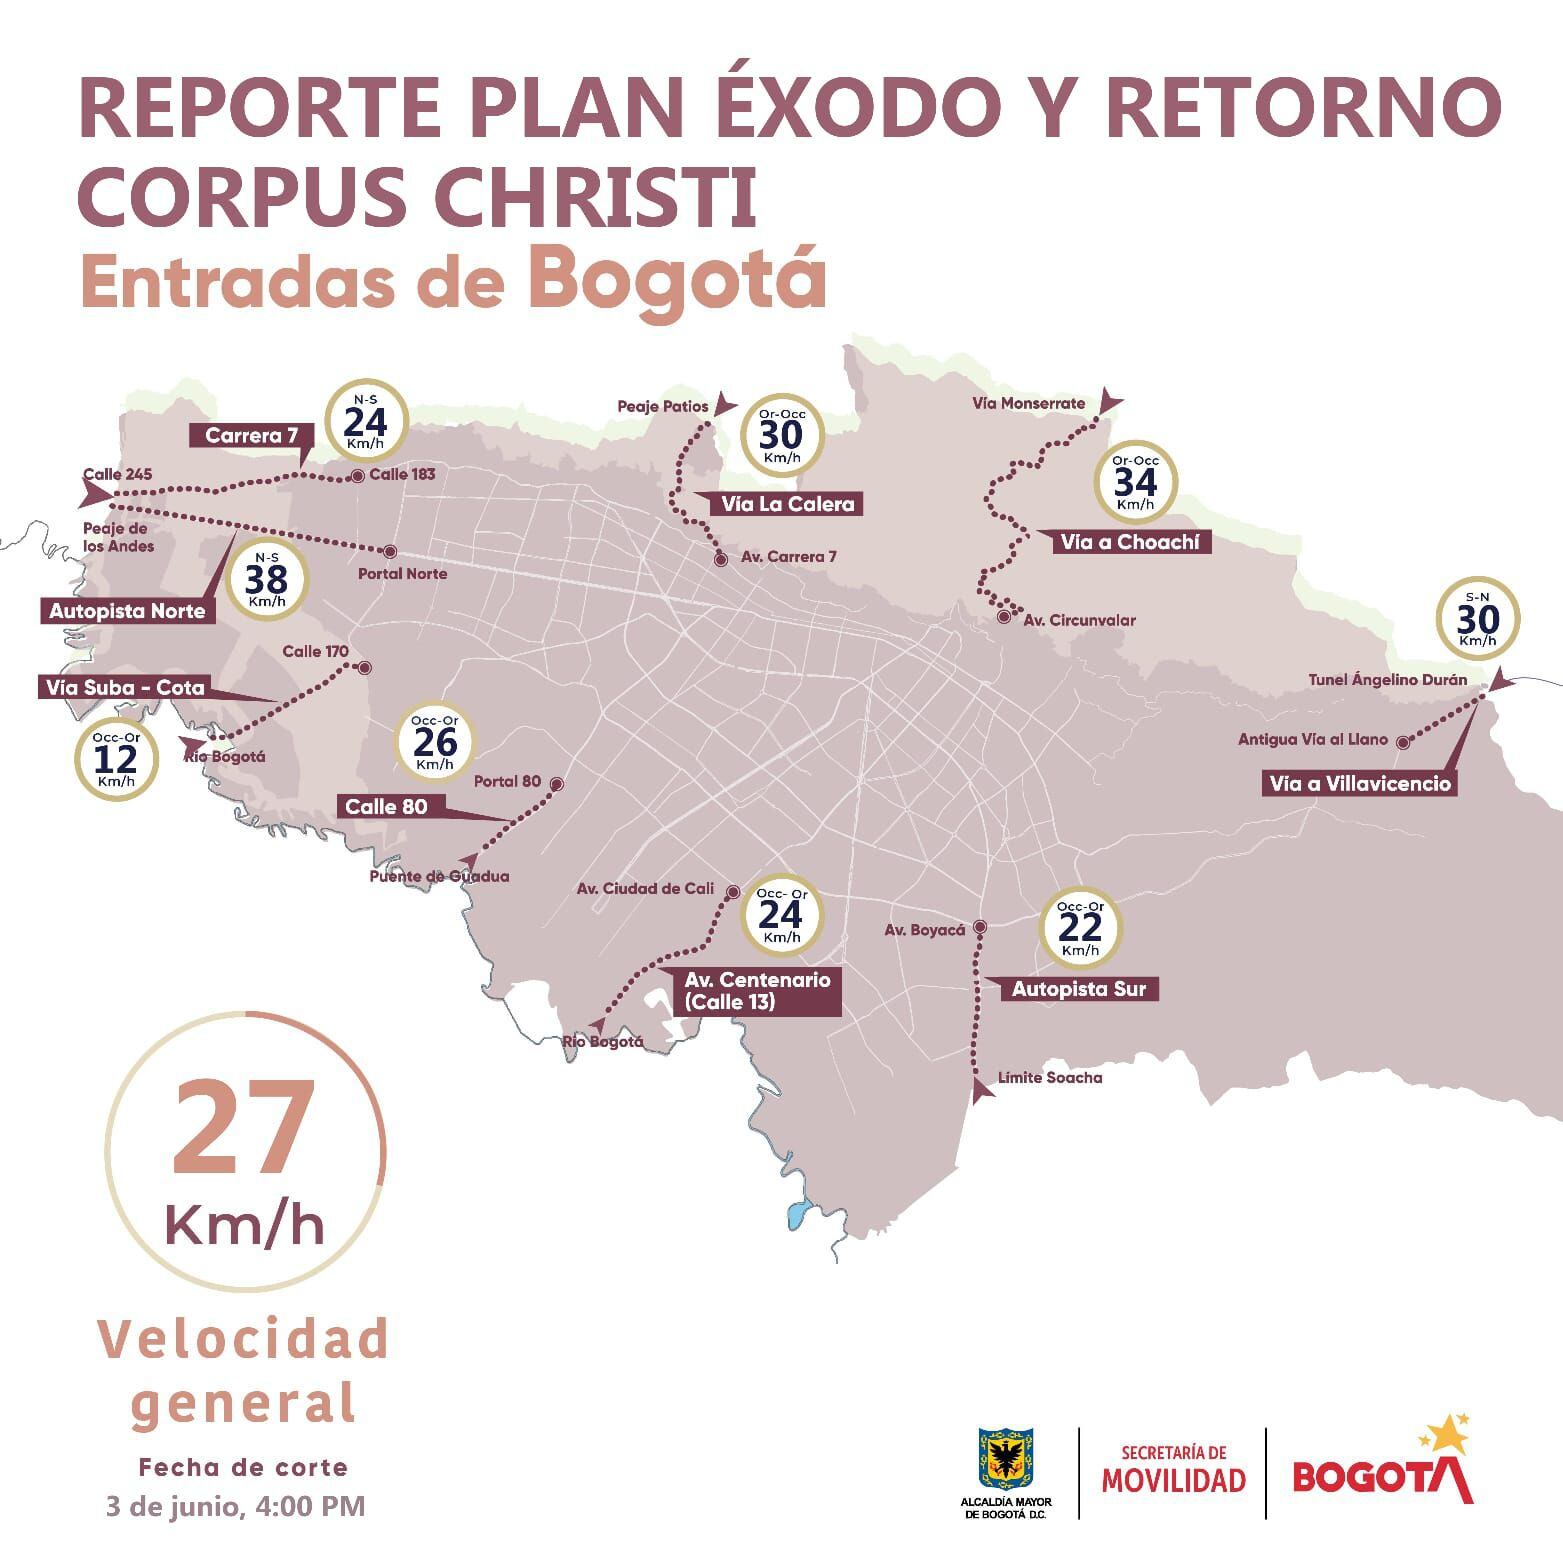 Se registra una velocidad promedio de 27 Km/ h en los corredores viales de entrada a Bogotá - crédito Secretaría de Movilidad